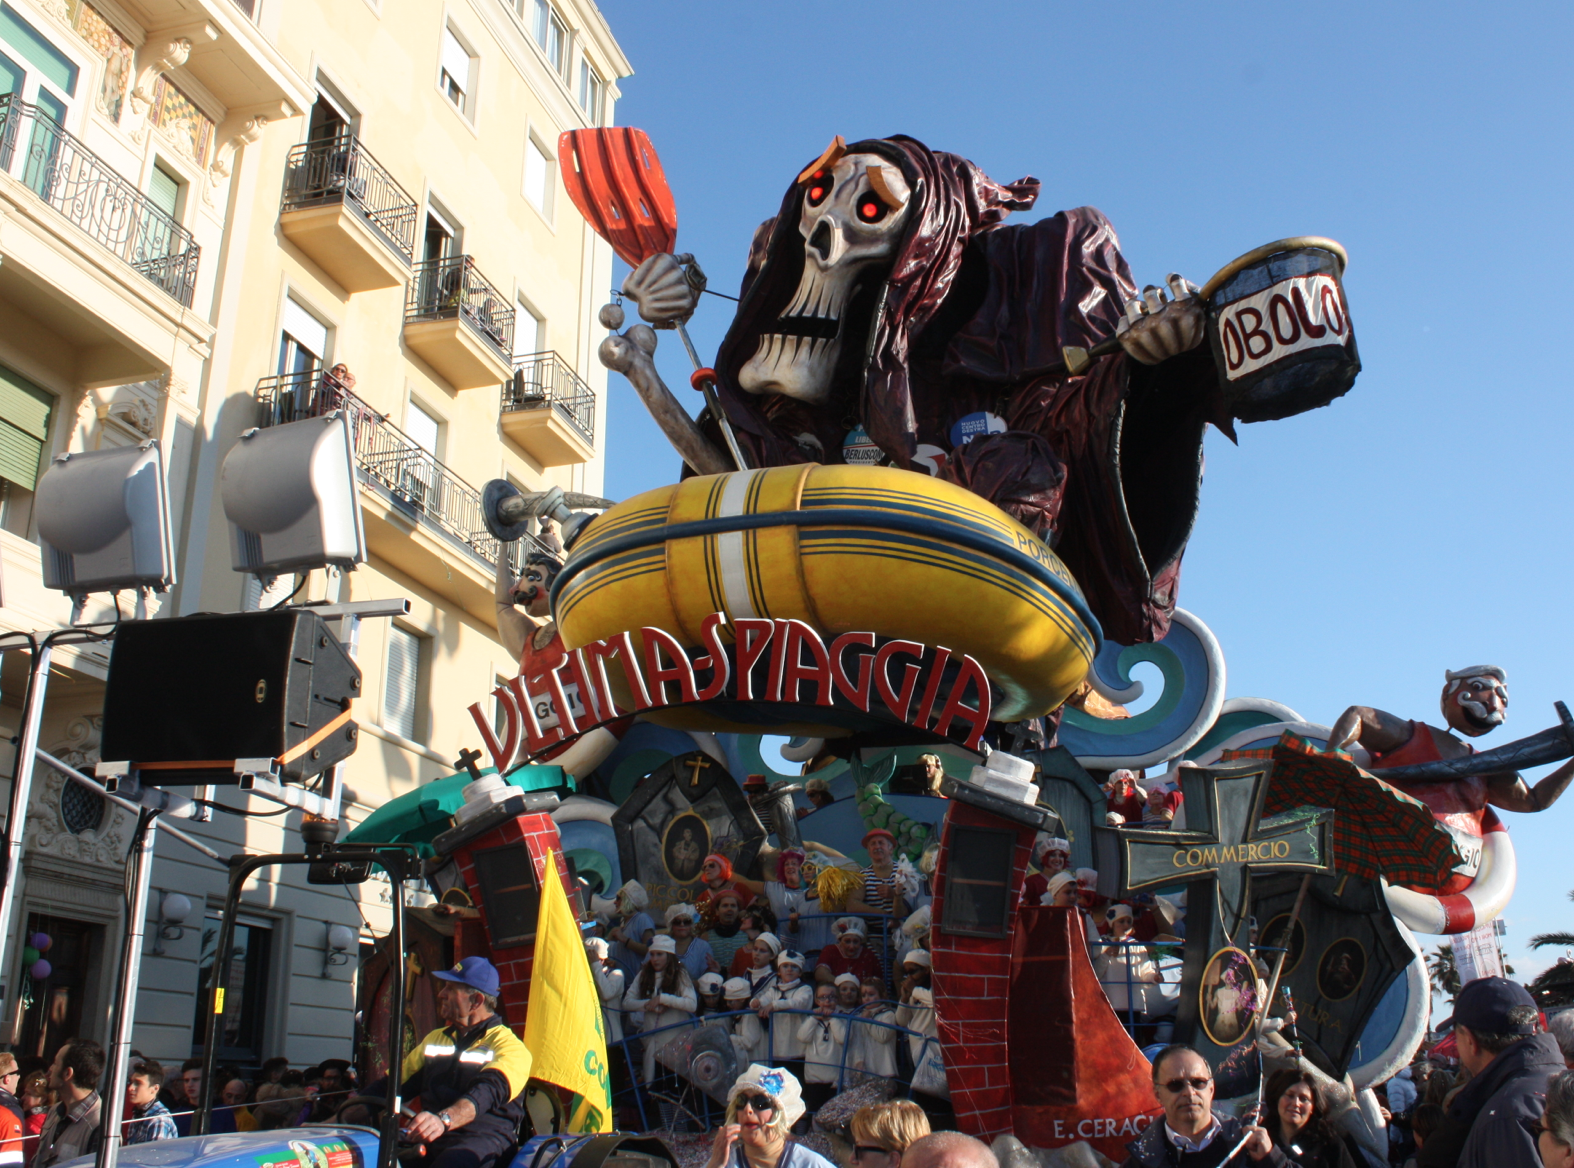 Carnevale di Viareggio 2015, i giurati del primo corso mascherato